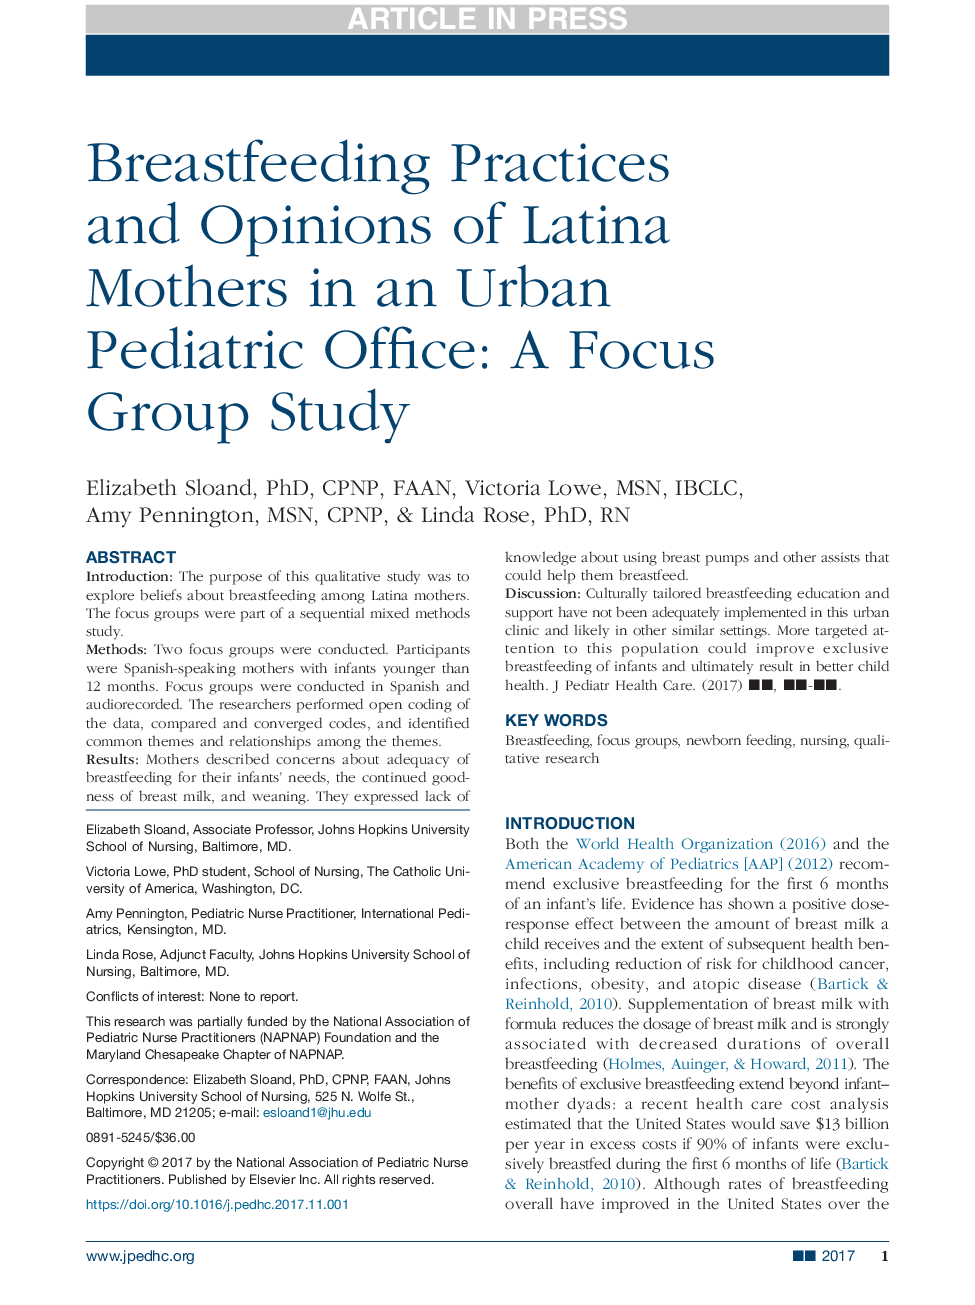 شیوه تغذیه با شیر مادر و نظرات مادران لاتین در دفتر اطفال شهری: یک مطالعه گروه تمرکز 